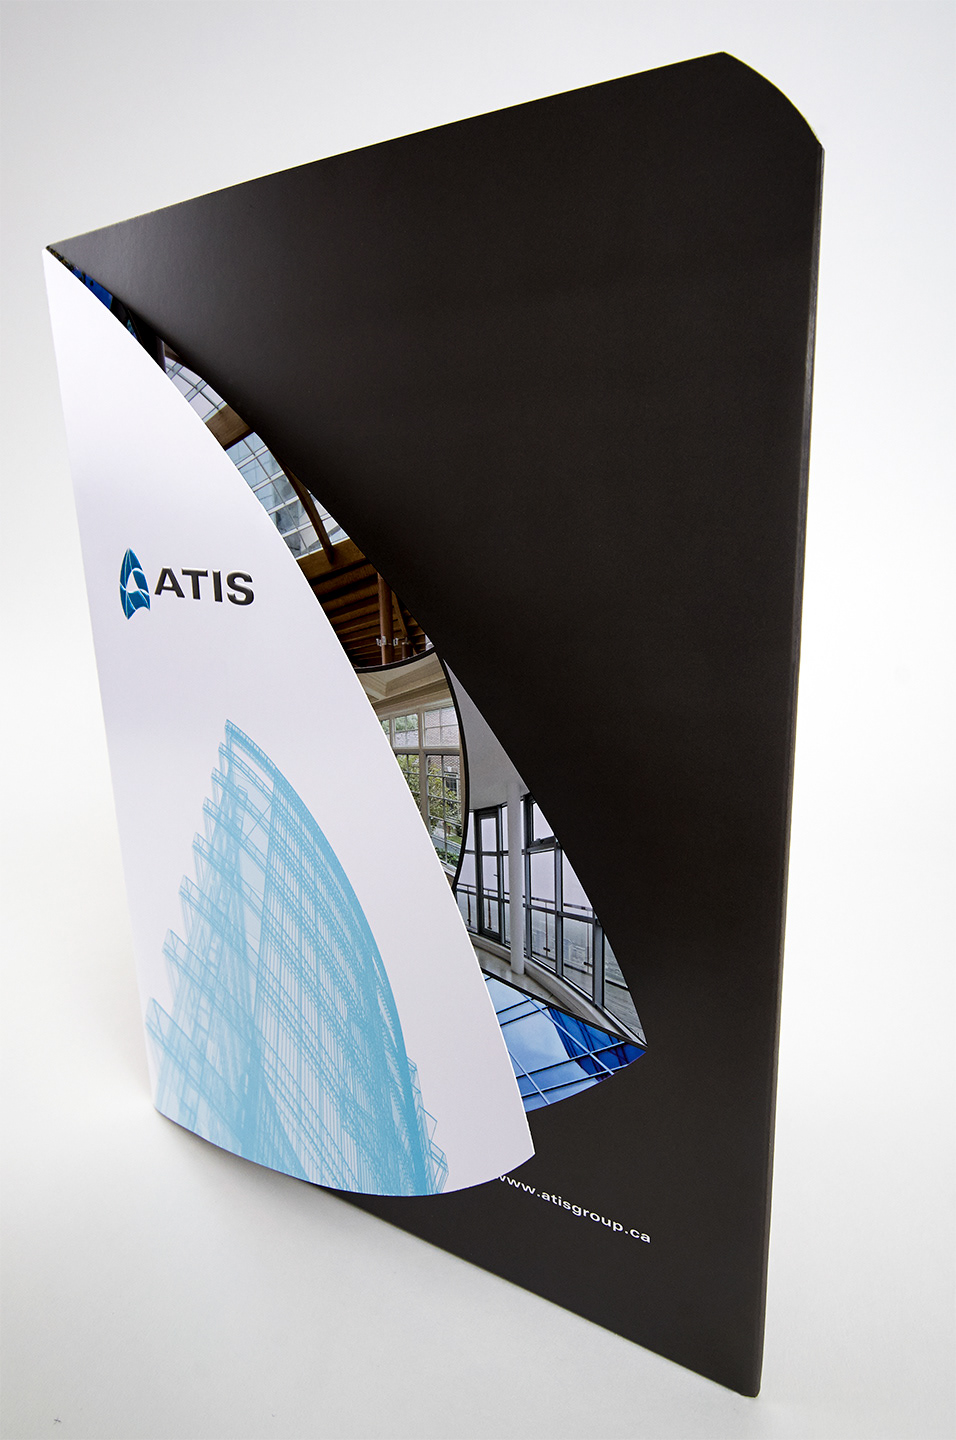 Atis Group corporate